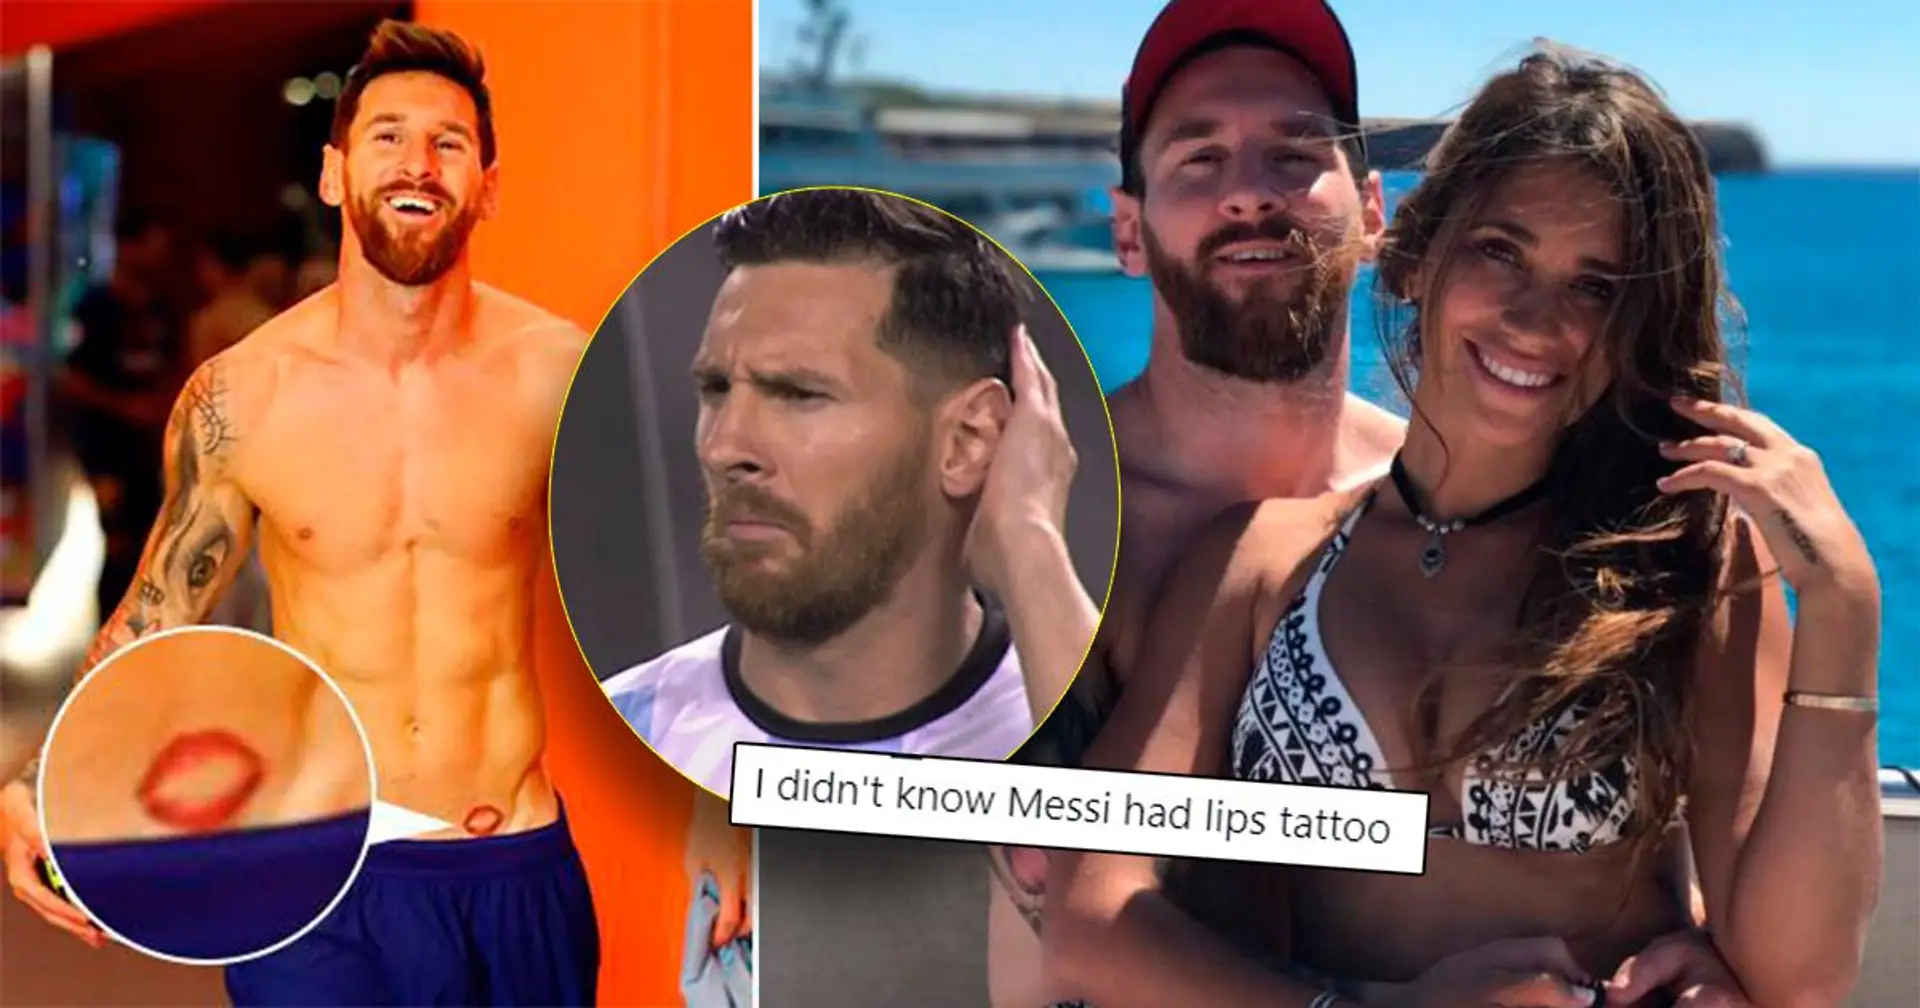 Pourquoi Lionel Messi a-t-il des lèvres tatouées sur la hanche ? Vous avez demandé - nous avons répondu